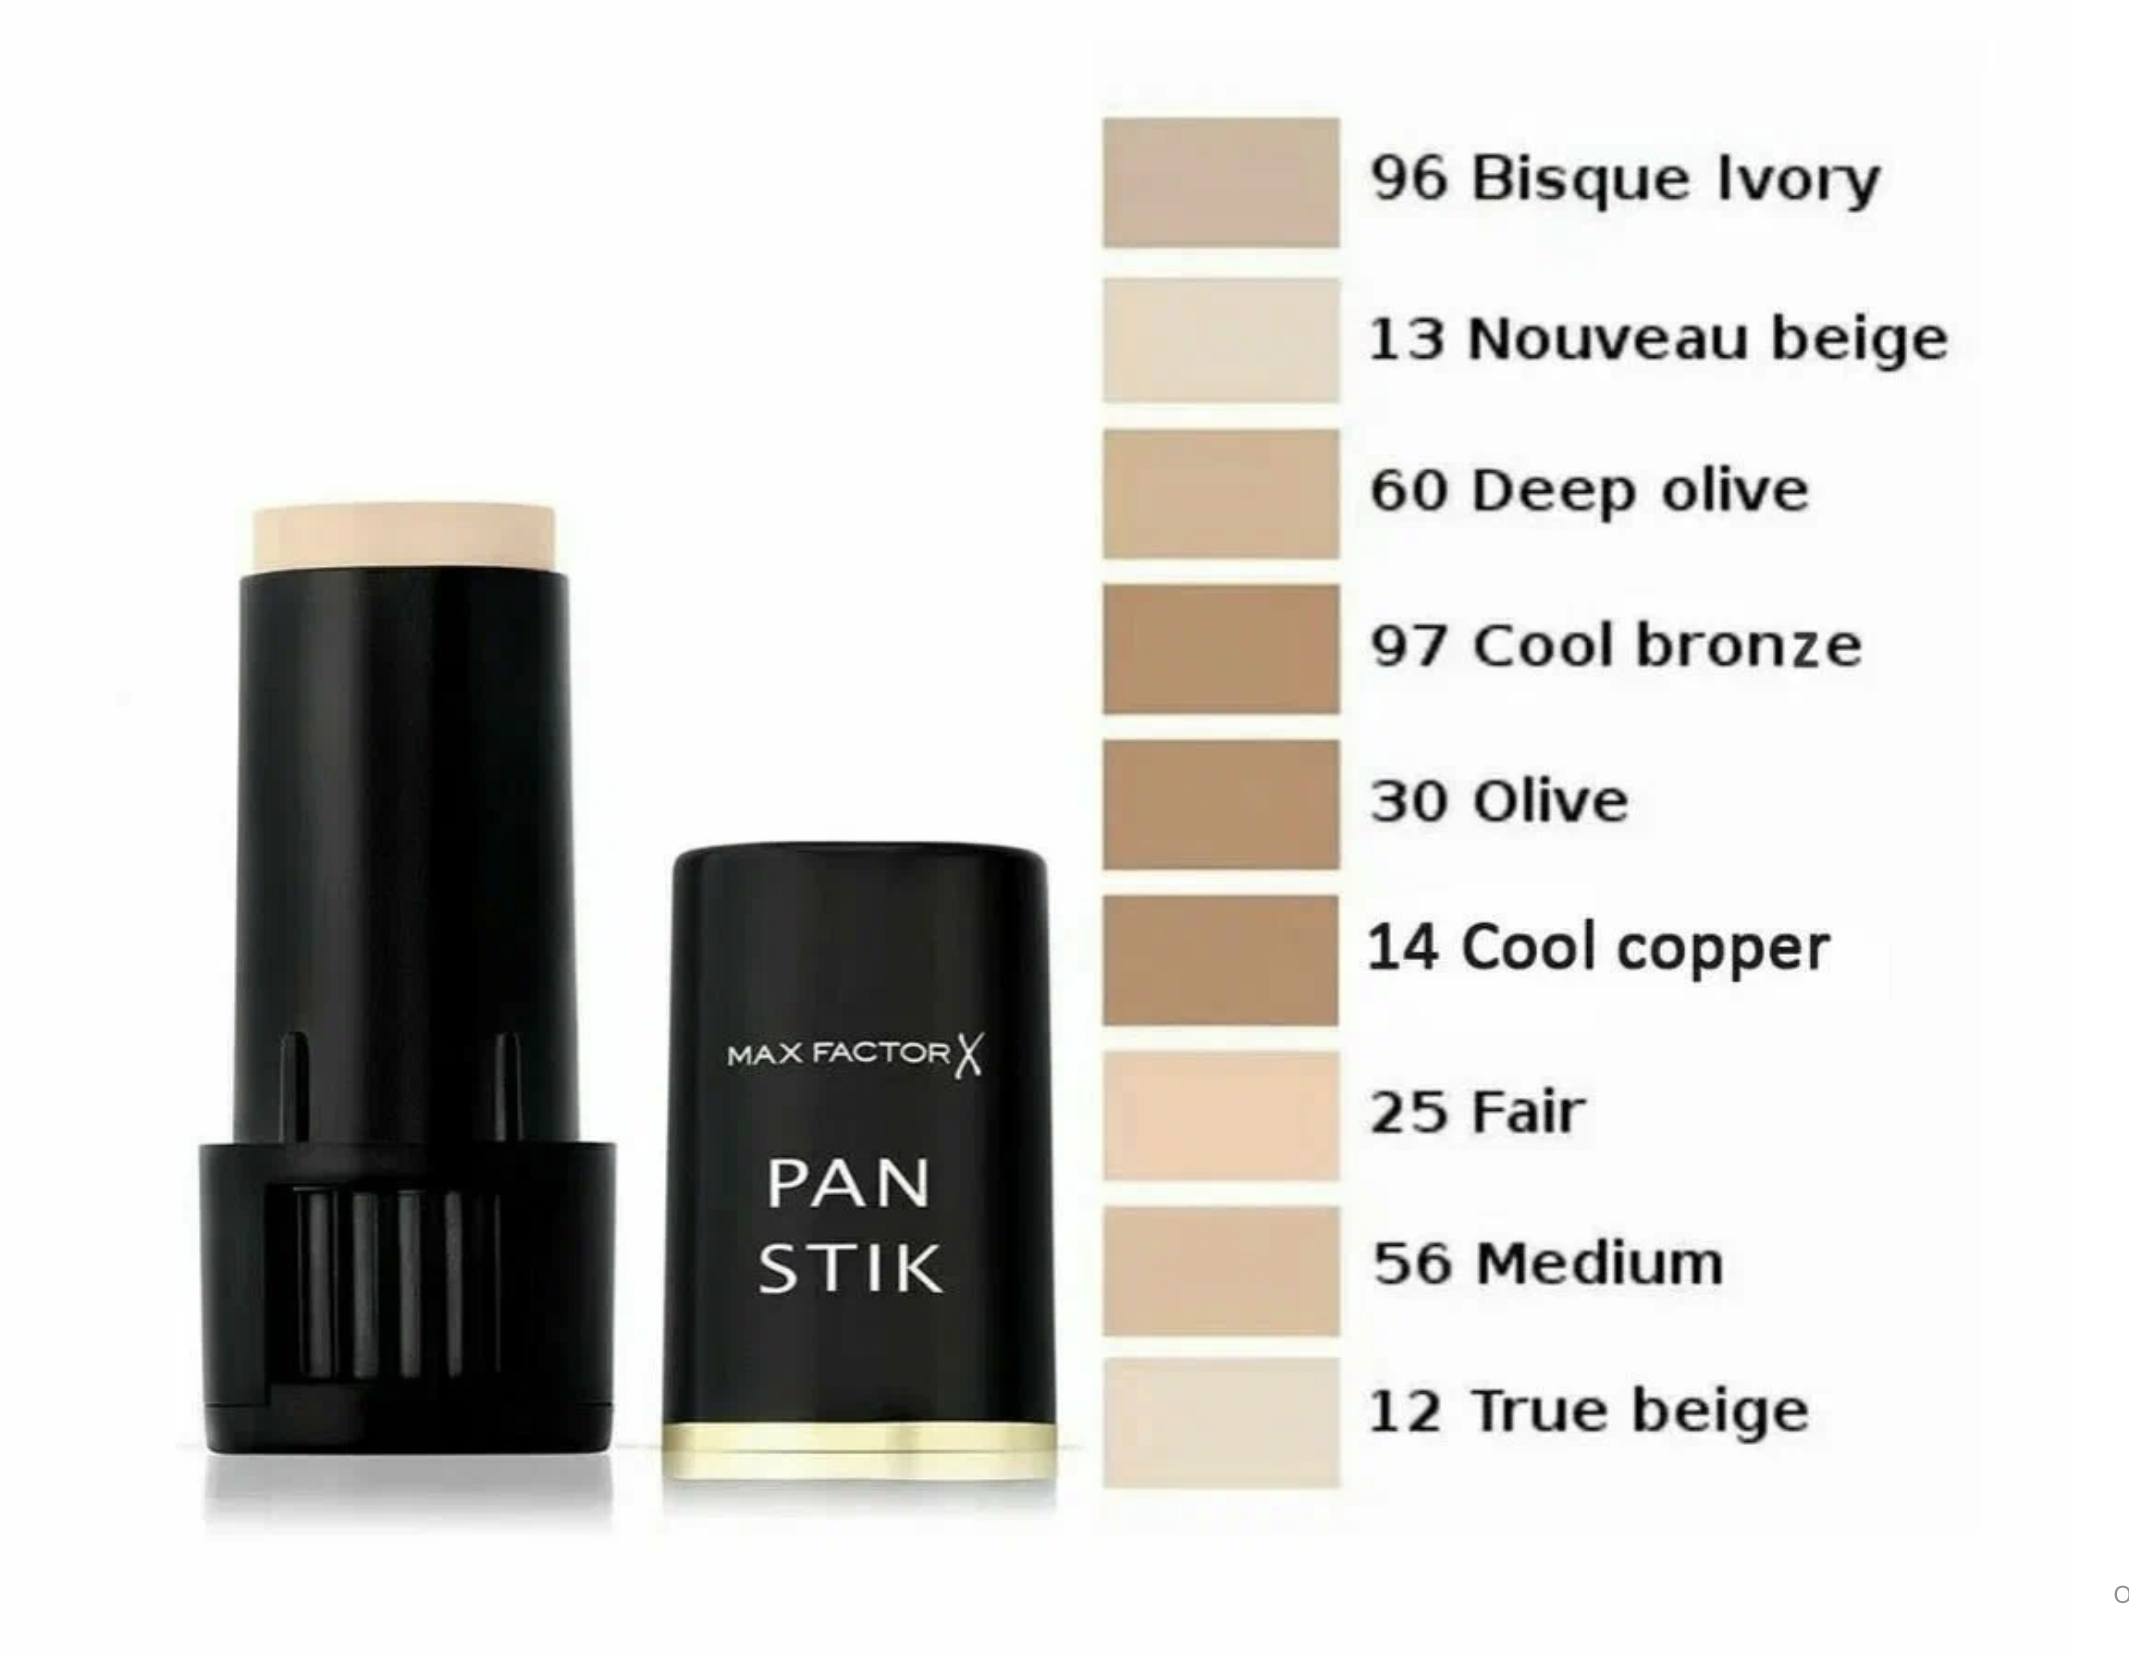    / Max Factor -     Pan Stik  96 Bisque Ivory 9 